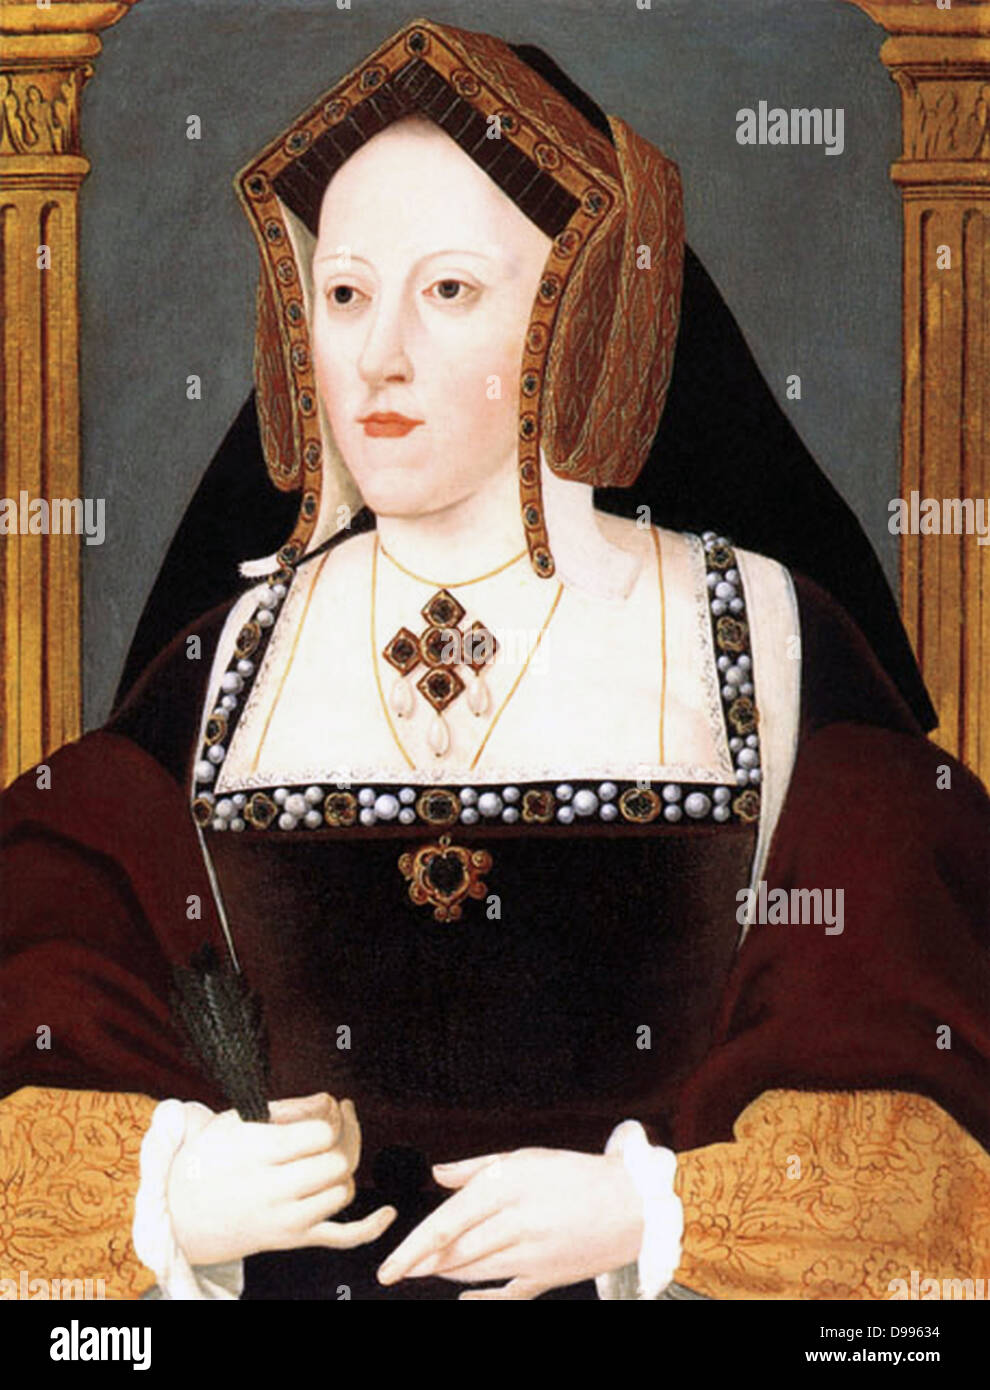 Katherine d'Aragon (16 décembre 1485 - 7 janvier 1536), l'Infante de Castille Catalina de Aragón y Castilla, était la reine d'Angleterre comme la première femme d'Henri VIII d'Angleterre. Banque D'Images